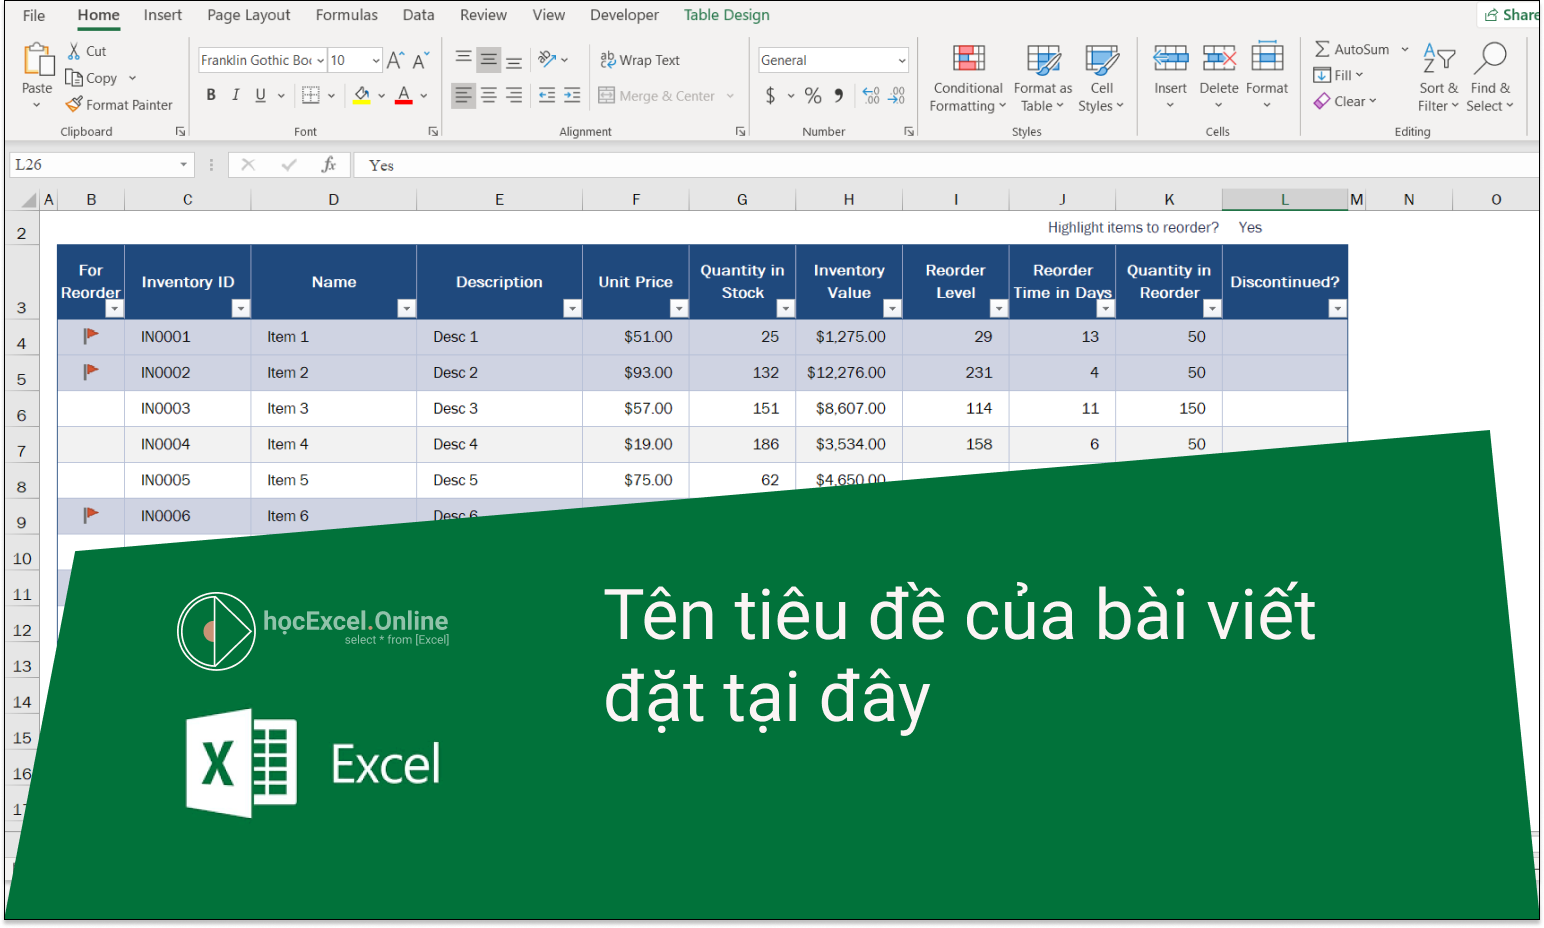 Căn chỉnh phông chữ trong Excel là một kĩ năng rất quan trọng trong công việc văn phòng hiện đại. Năm 2024, với sự phổ biến của công nghệ, việc sử dụng Excel để tạo bảng tính và hỗ trợ công việc ngày càng trở nên phổ biến hơn. Căn chỉnh phông chữ đúng cách sẽ giúp cho bảng tính của bạn dễ đọc hơn, tăng tính chuyên nghiệp và hiệu quả trong công việc. Hãy cùng tìm hiểu và ứng dụng kĩ năng căn chỉnh phông chữ trong Excel để cải thiện công việc của bạn.